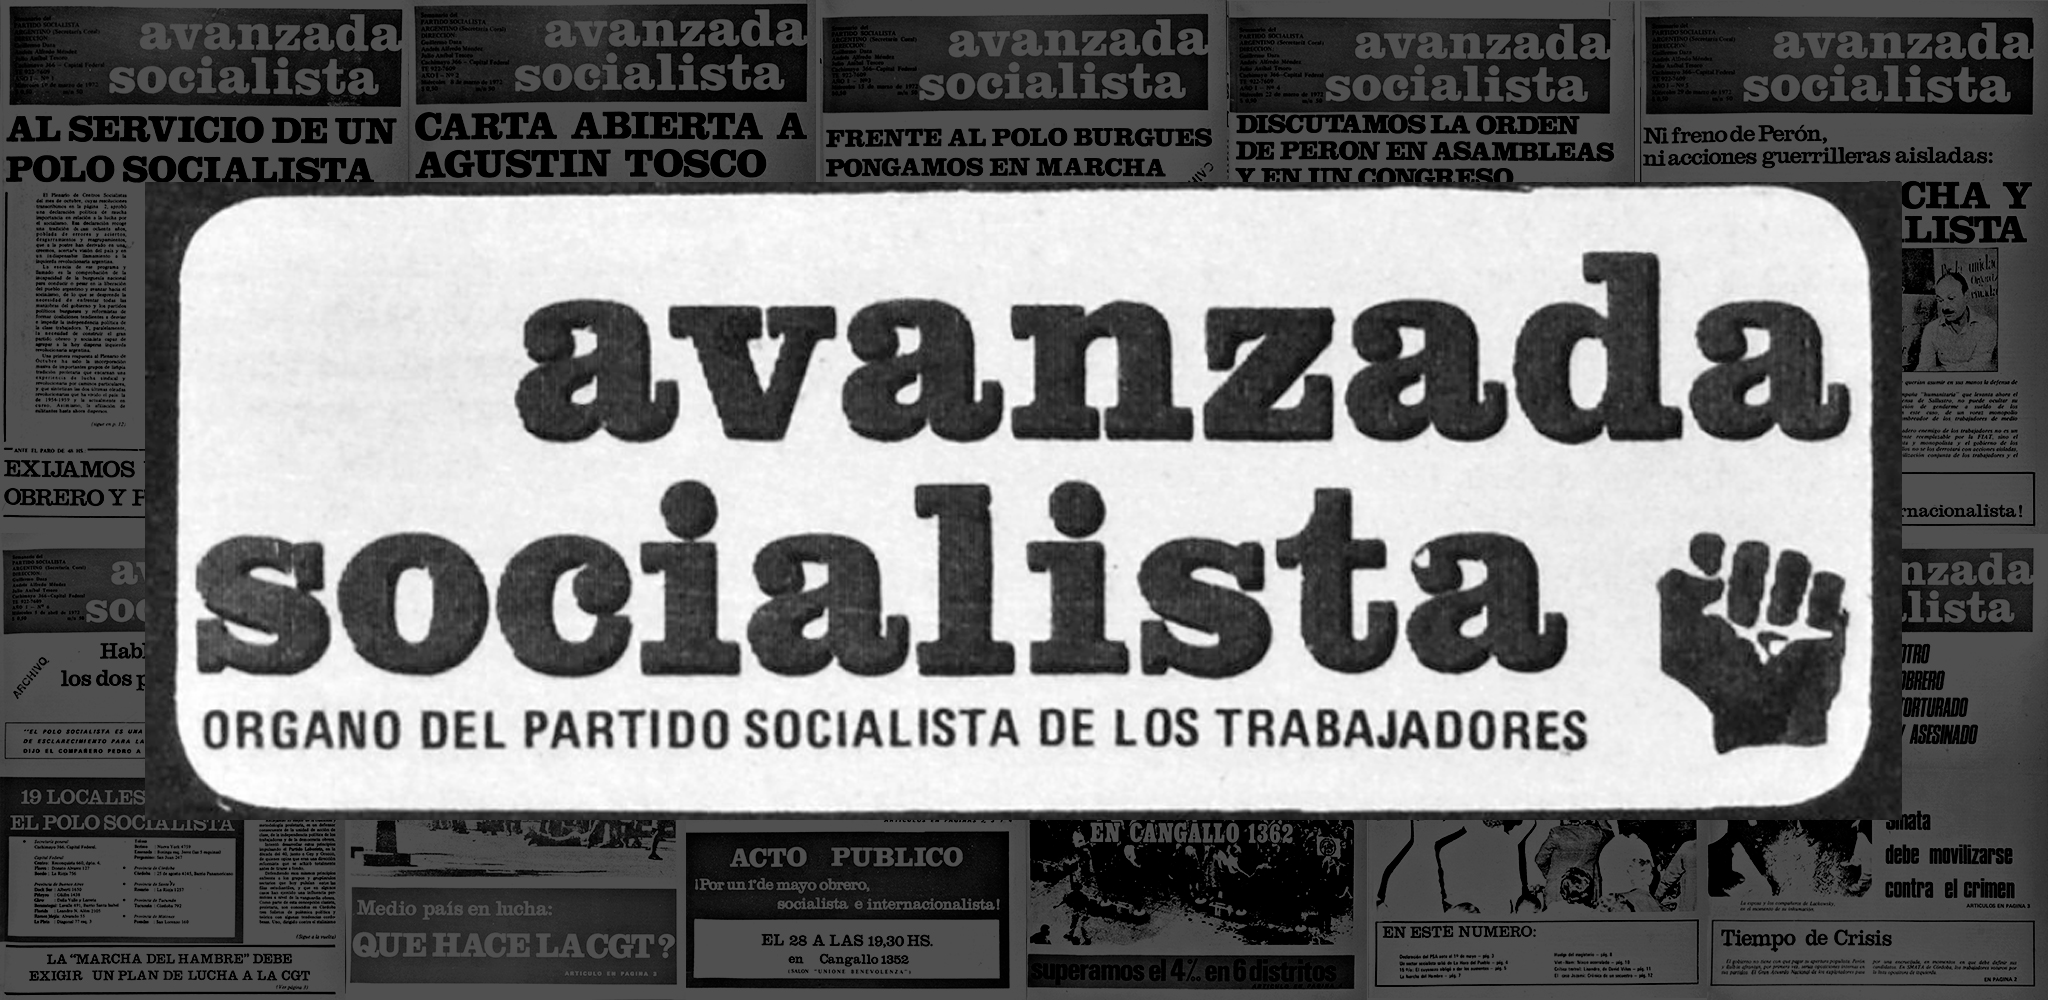 Avanzada Socialista (1974)